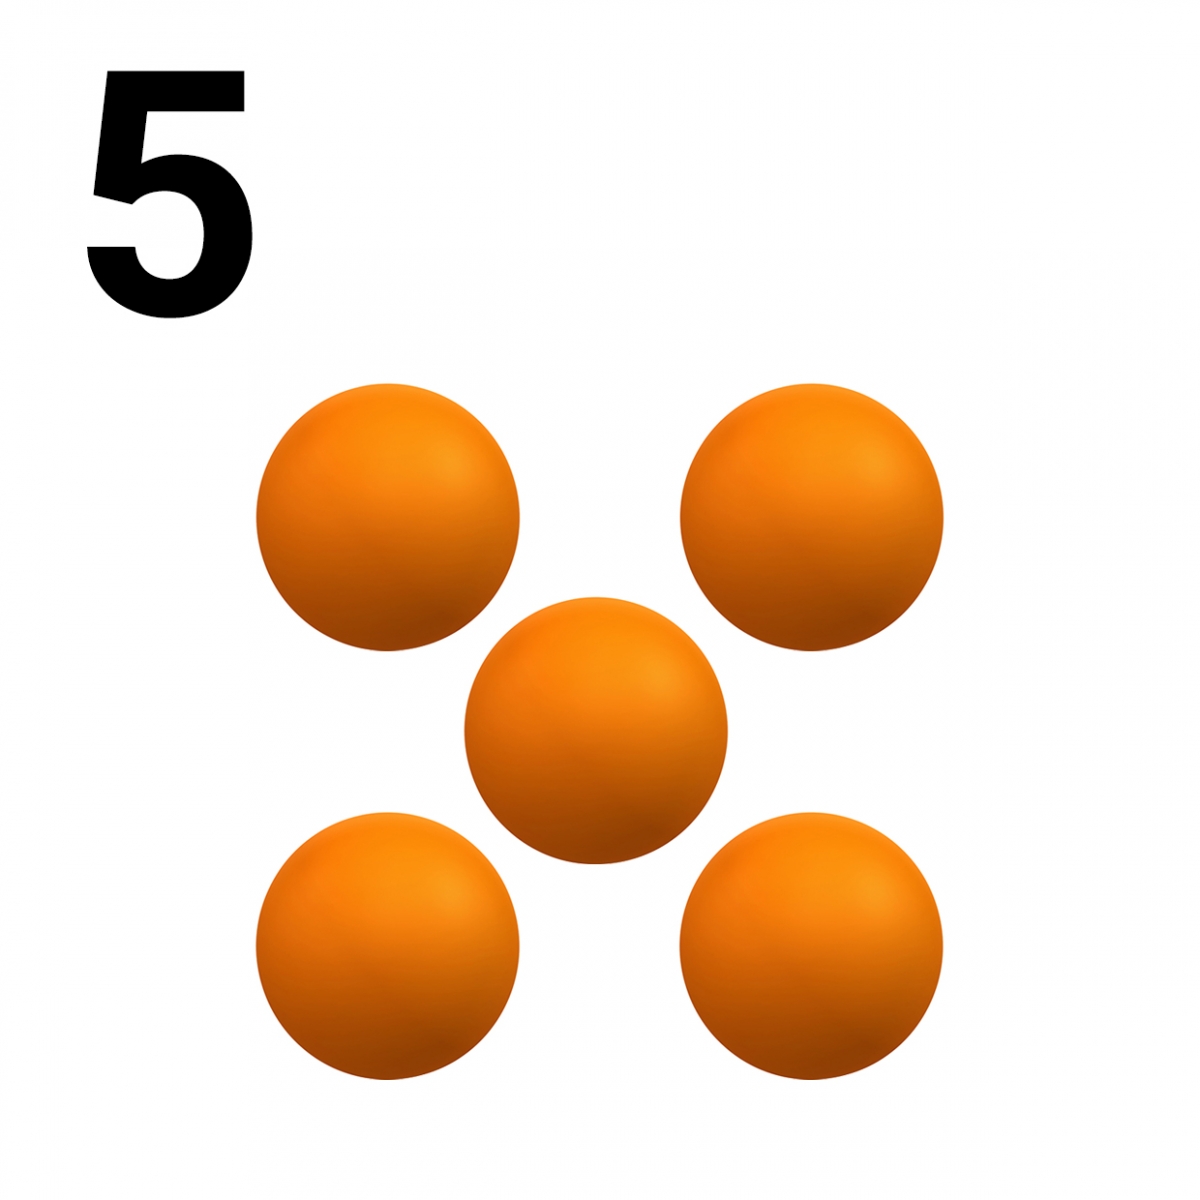 Imagen en la que se representa el número cinco